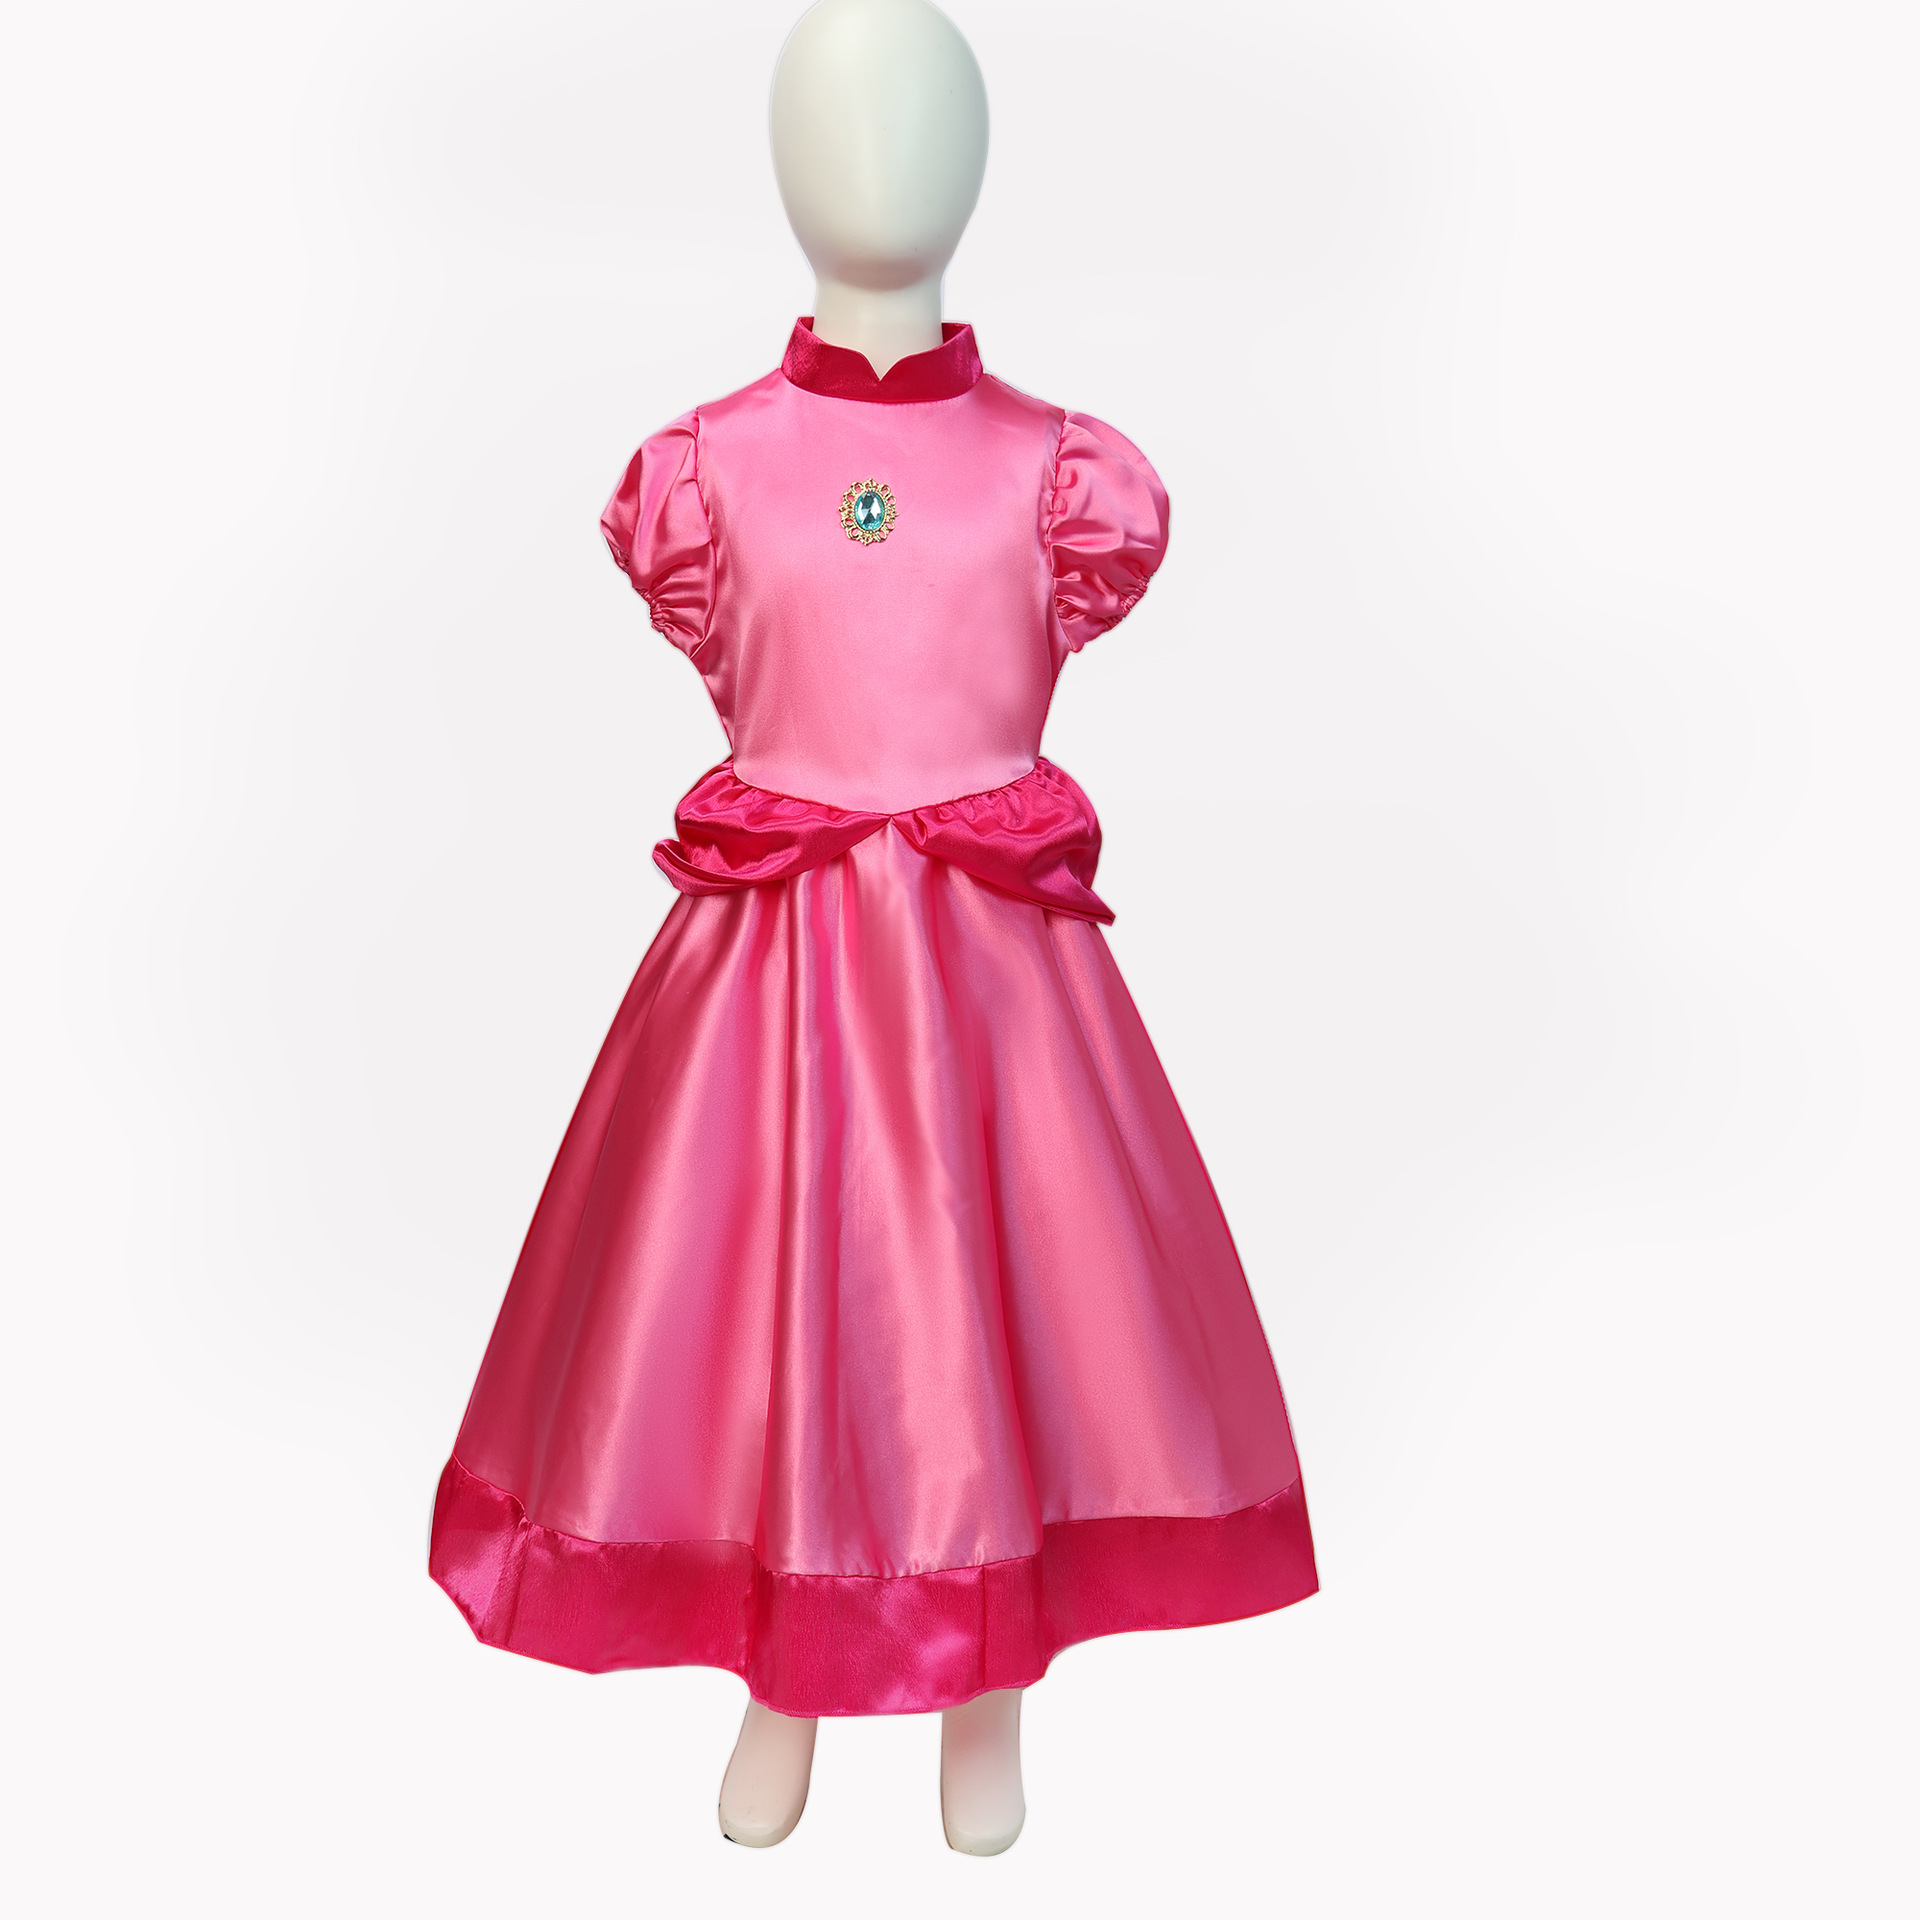 Super Mario Peach Princess Dress Princess Peach Peach Princess Dress cosplay costume